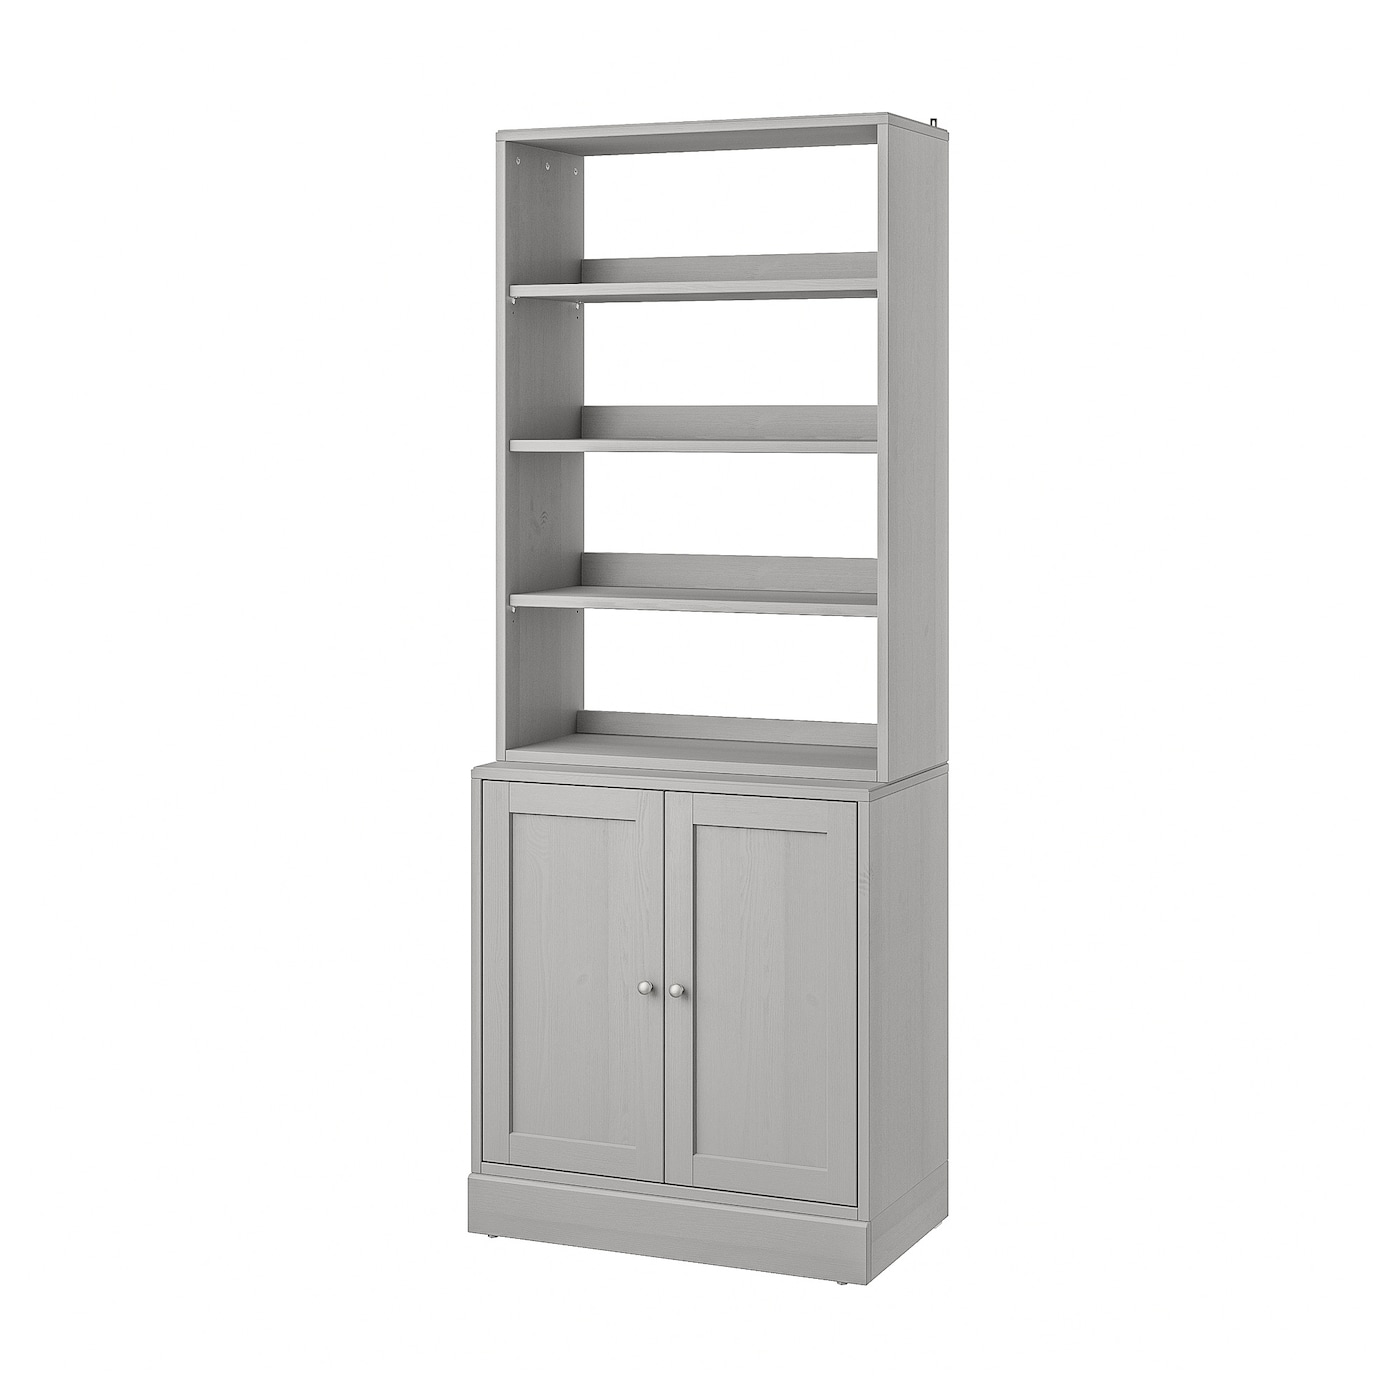 Книжный шкаф - HAVSTA IKEA/ ХАВСТА ИКЕА,  212х81 см, серый